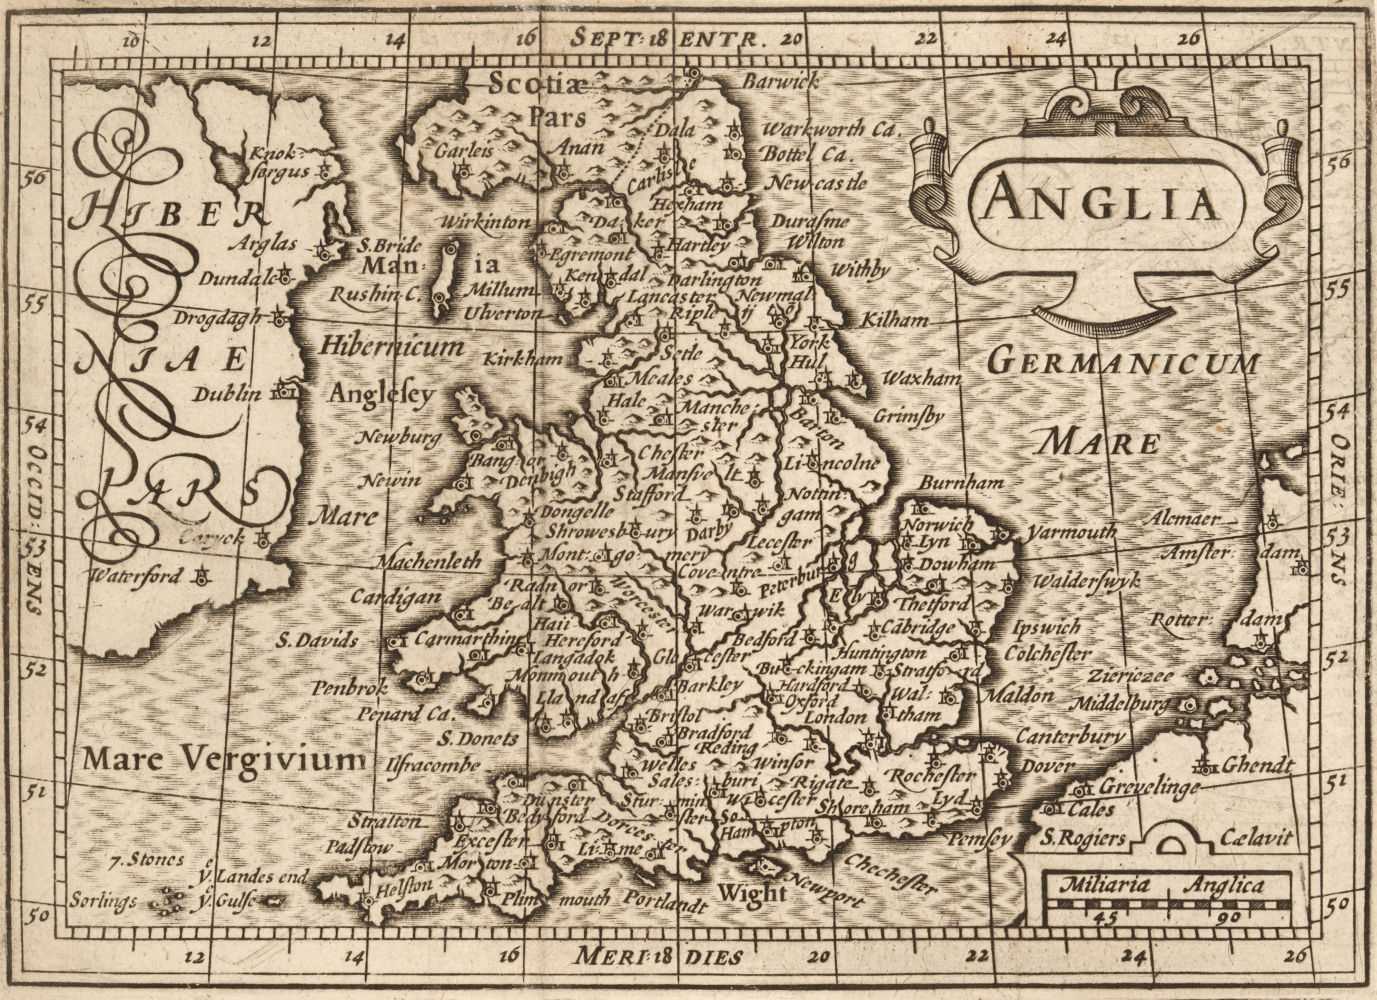 Lot 48 - Camden (William). Guili. Camdeni Viri Clarissimi Britannia..., 1639